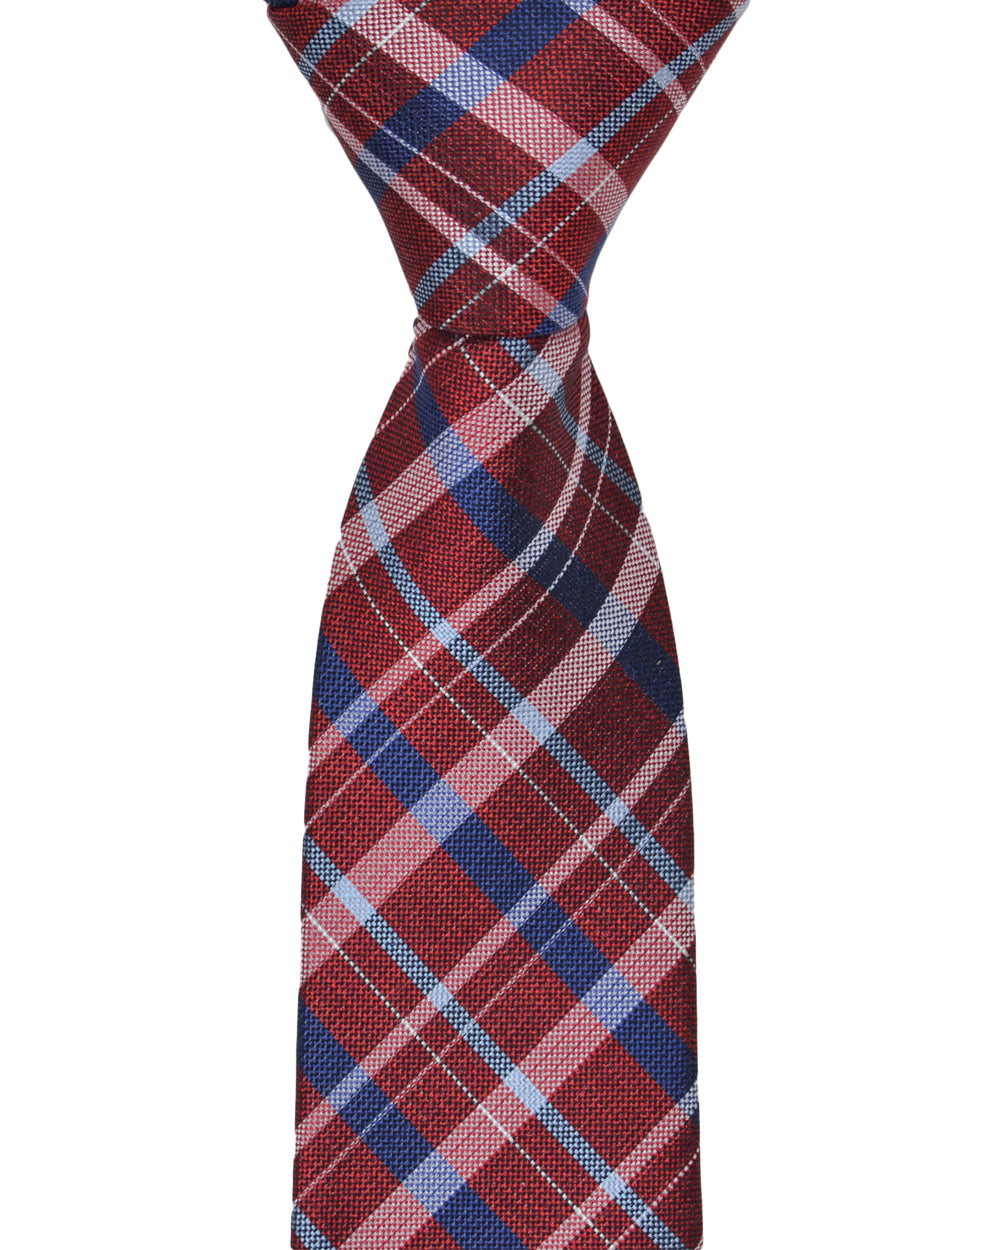 Kensleigh Plaid Silk Neck Tie - Red